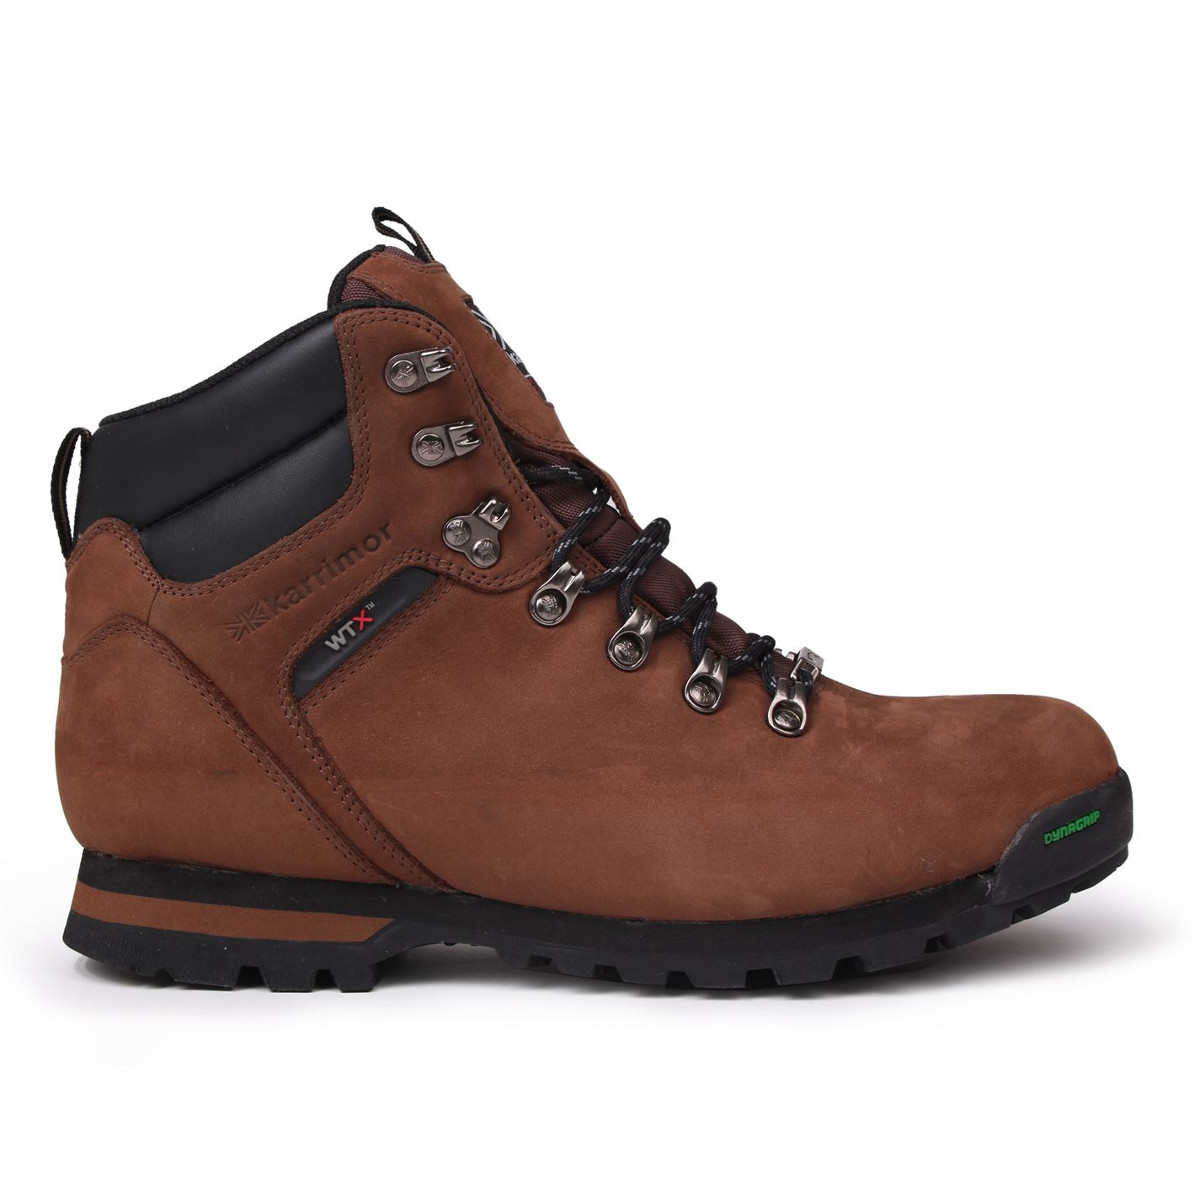 Karrimor Men's Ksb Kinder Mid Waterproof Hiking Boots - Size 9.5